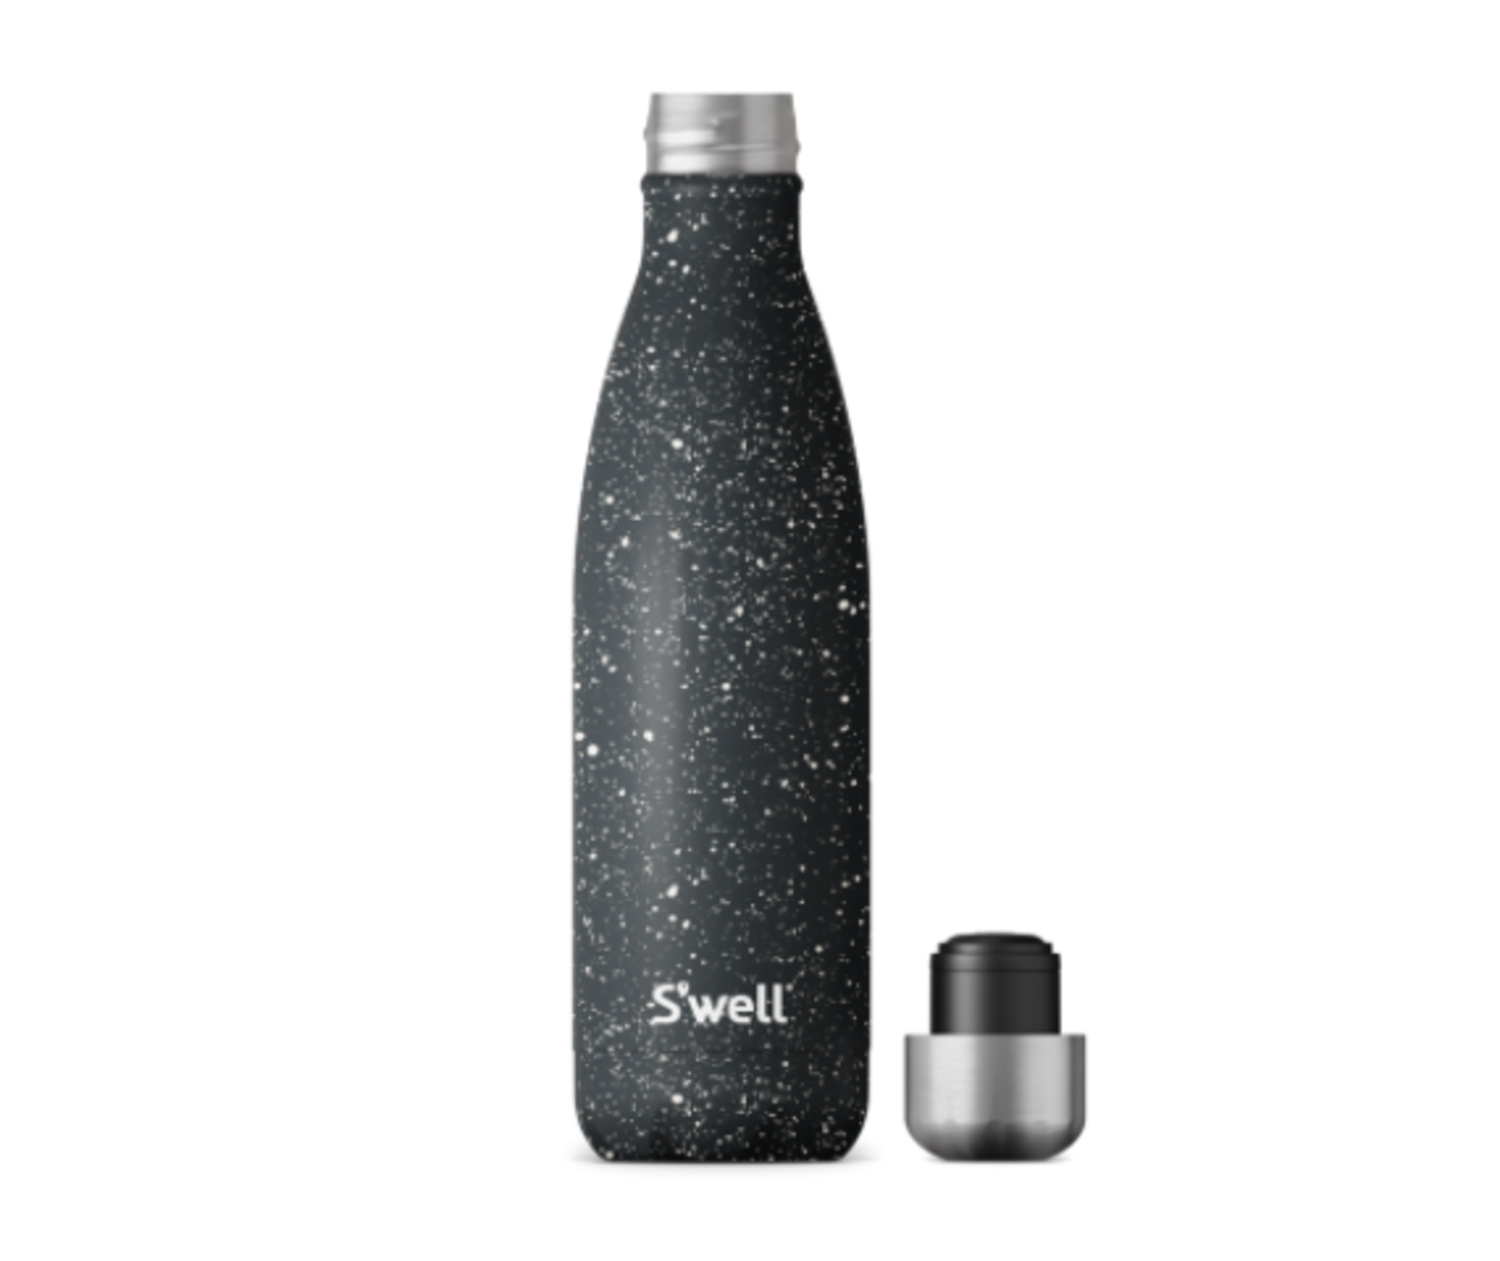 https://cdn.shoplightspeed.com/shops/613188/files/37406326/1500x4000x3/swell-bottle-swell-sip-waterbottle-17oz-speckled-n.jpg